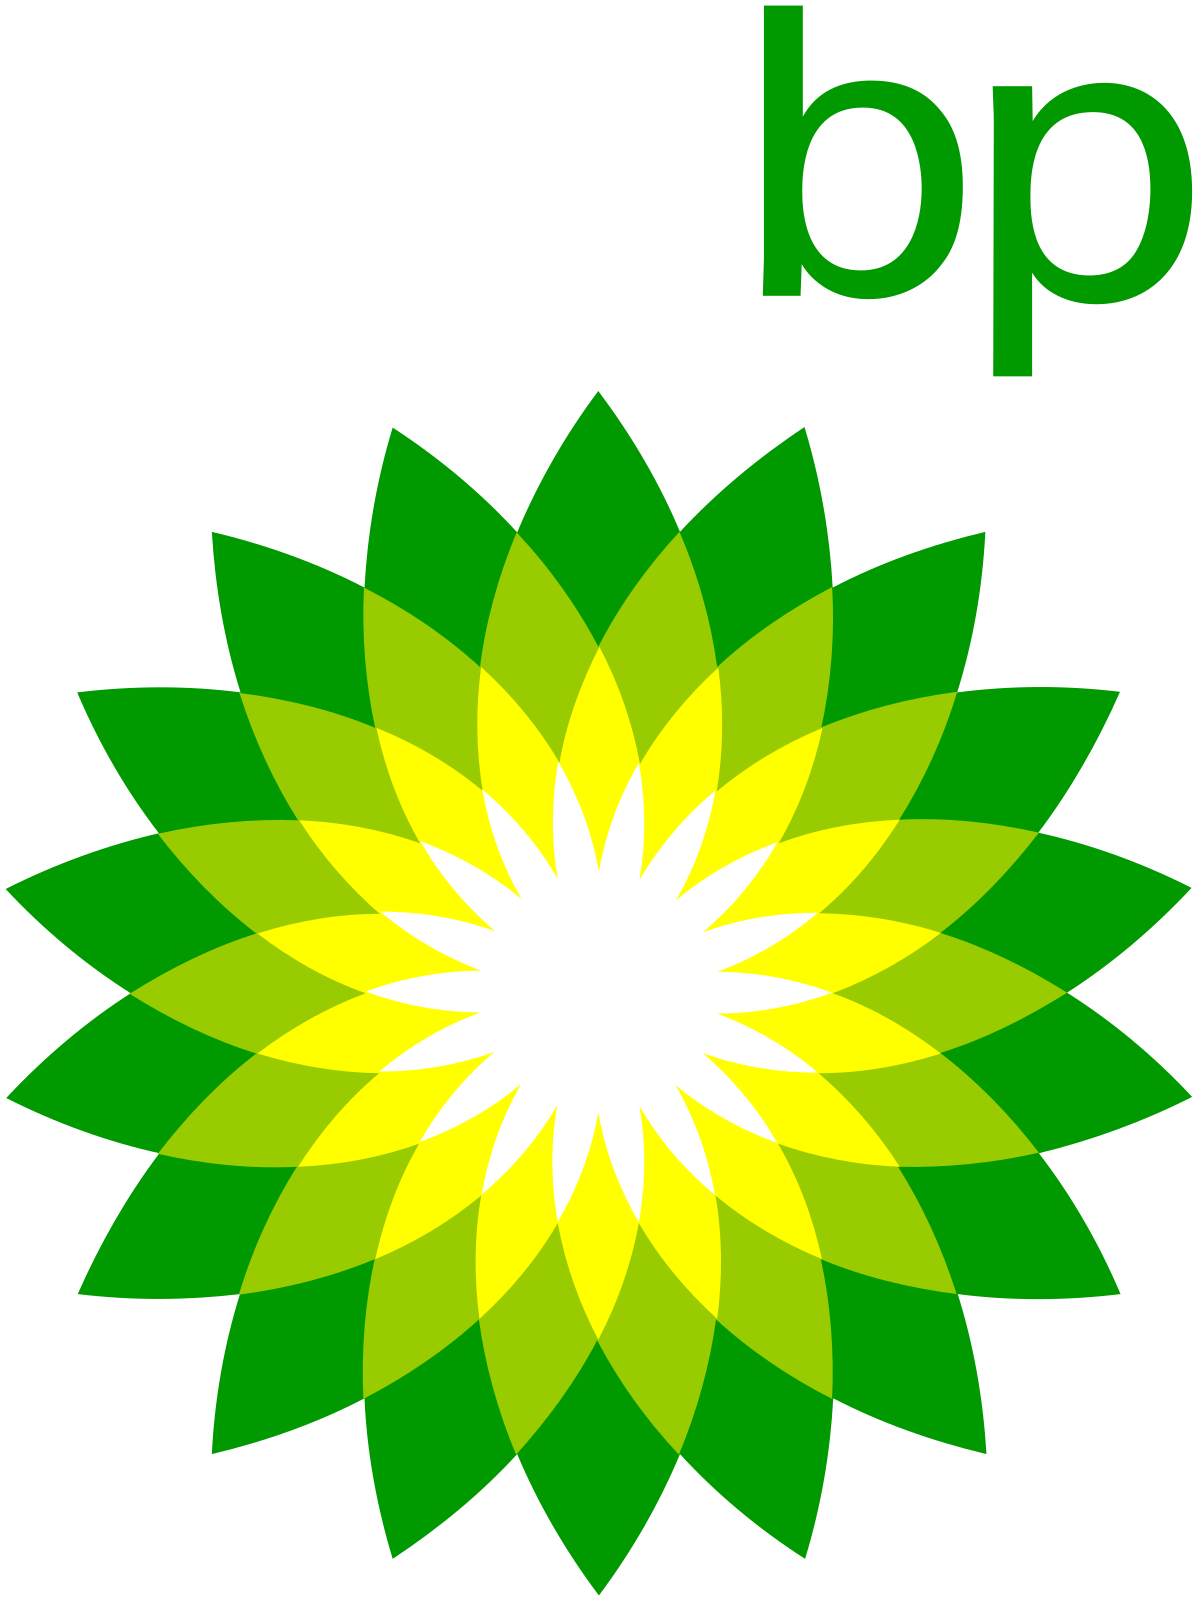 Old Oil Company Logo - BP